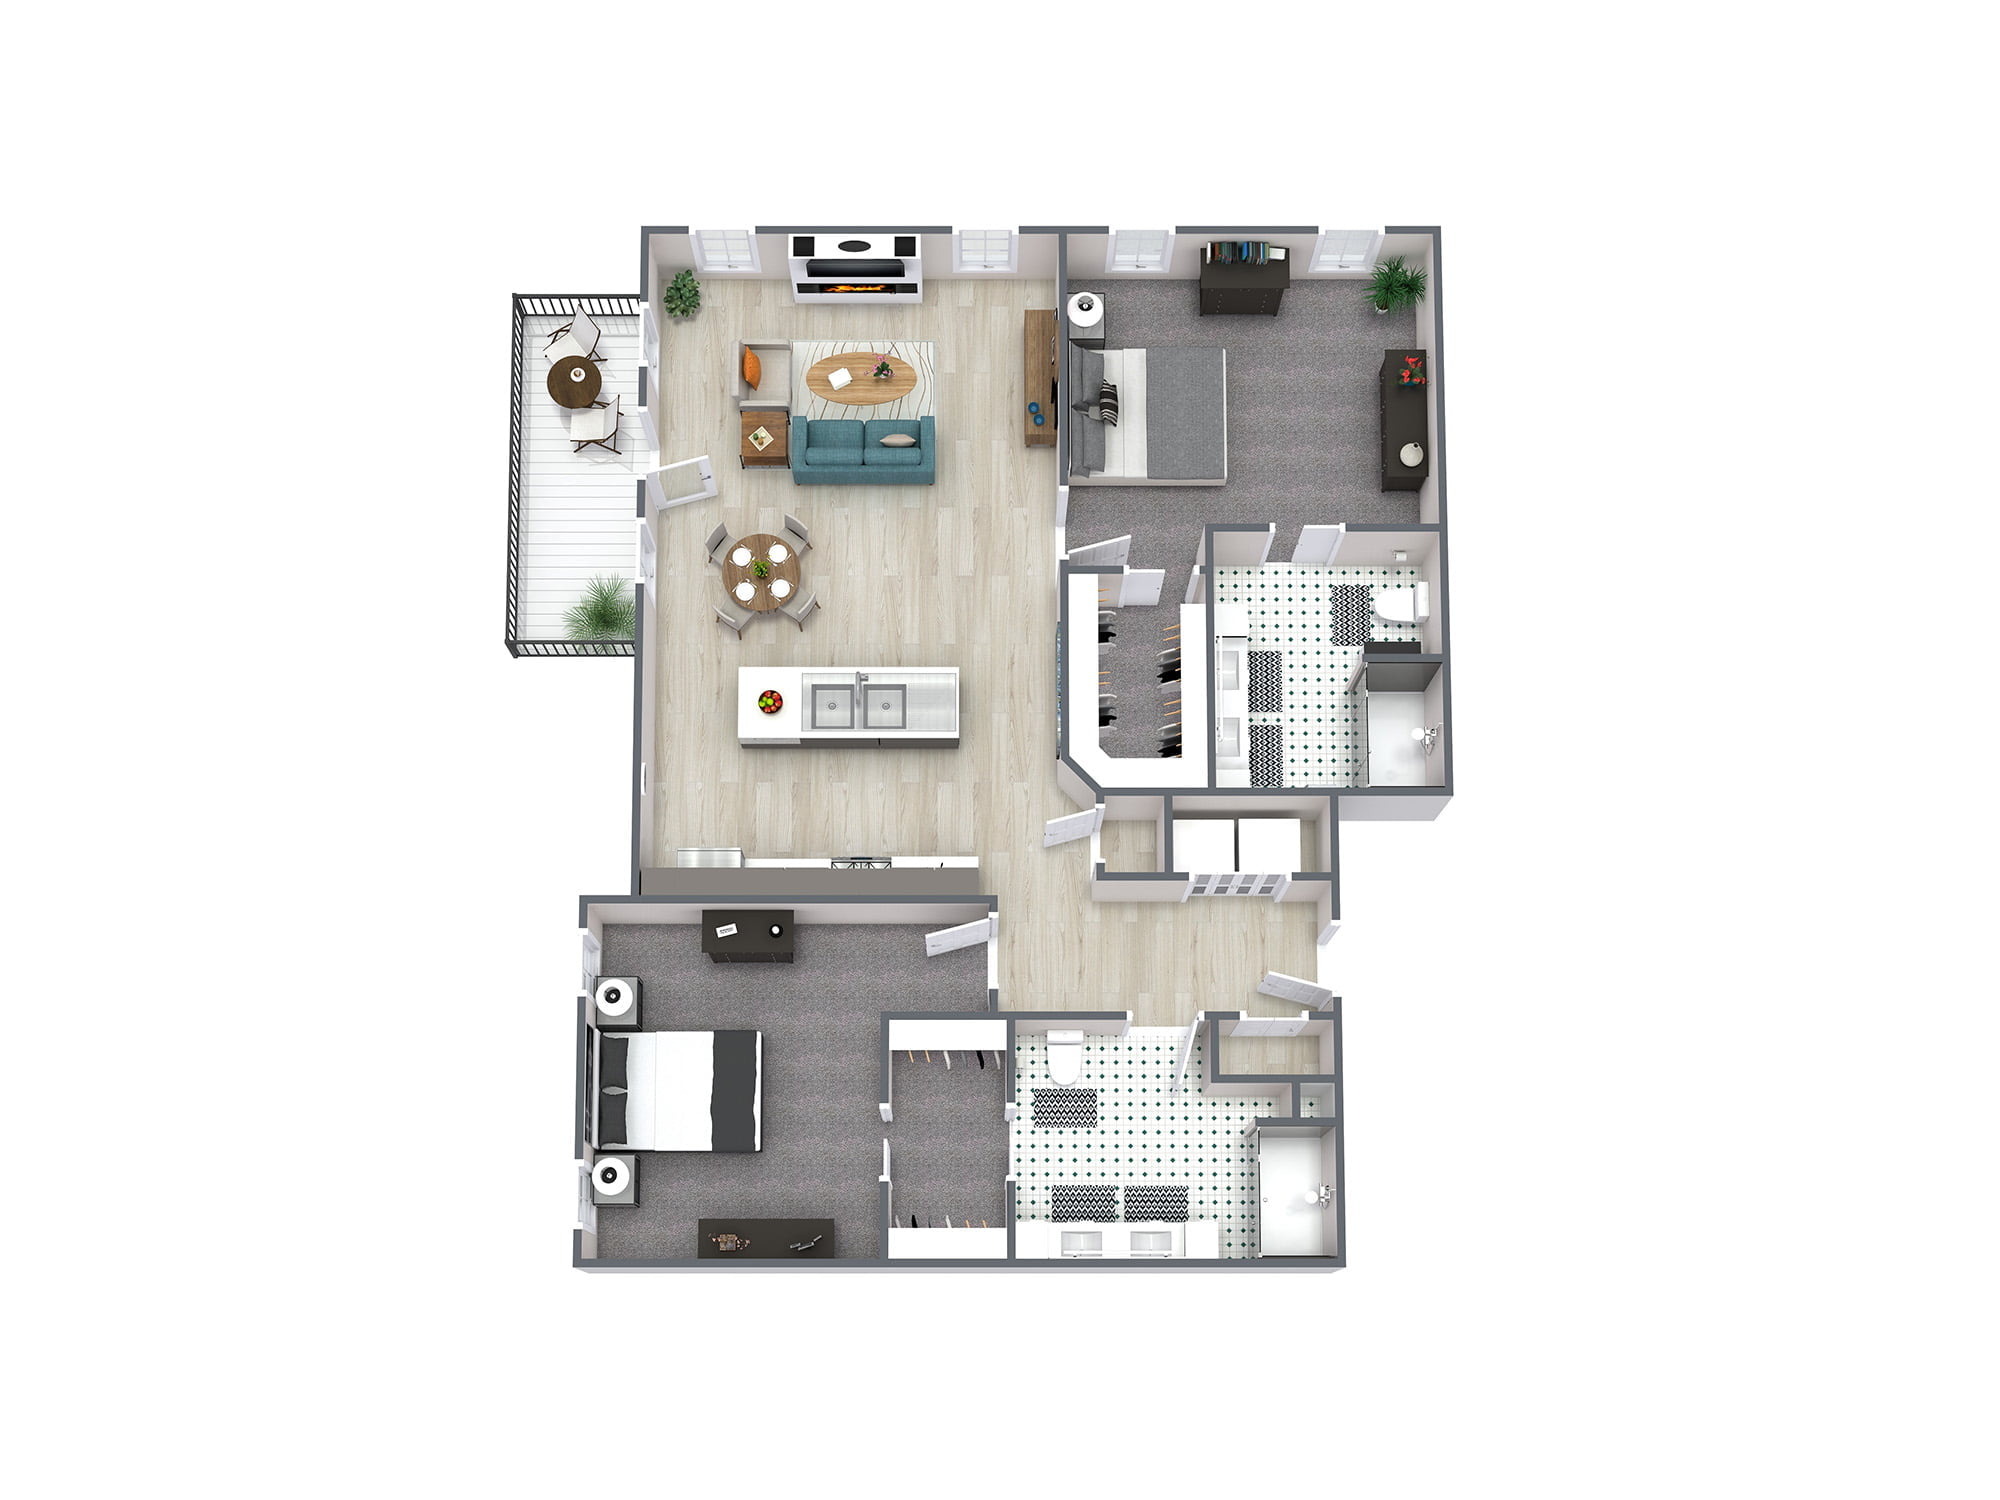 Cobalt Floorplan - 2 Bedroom 2 Bathroom - Saratoga Springs, NY